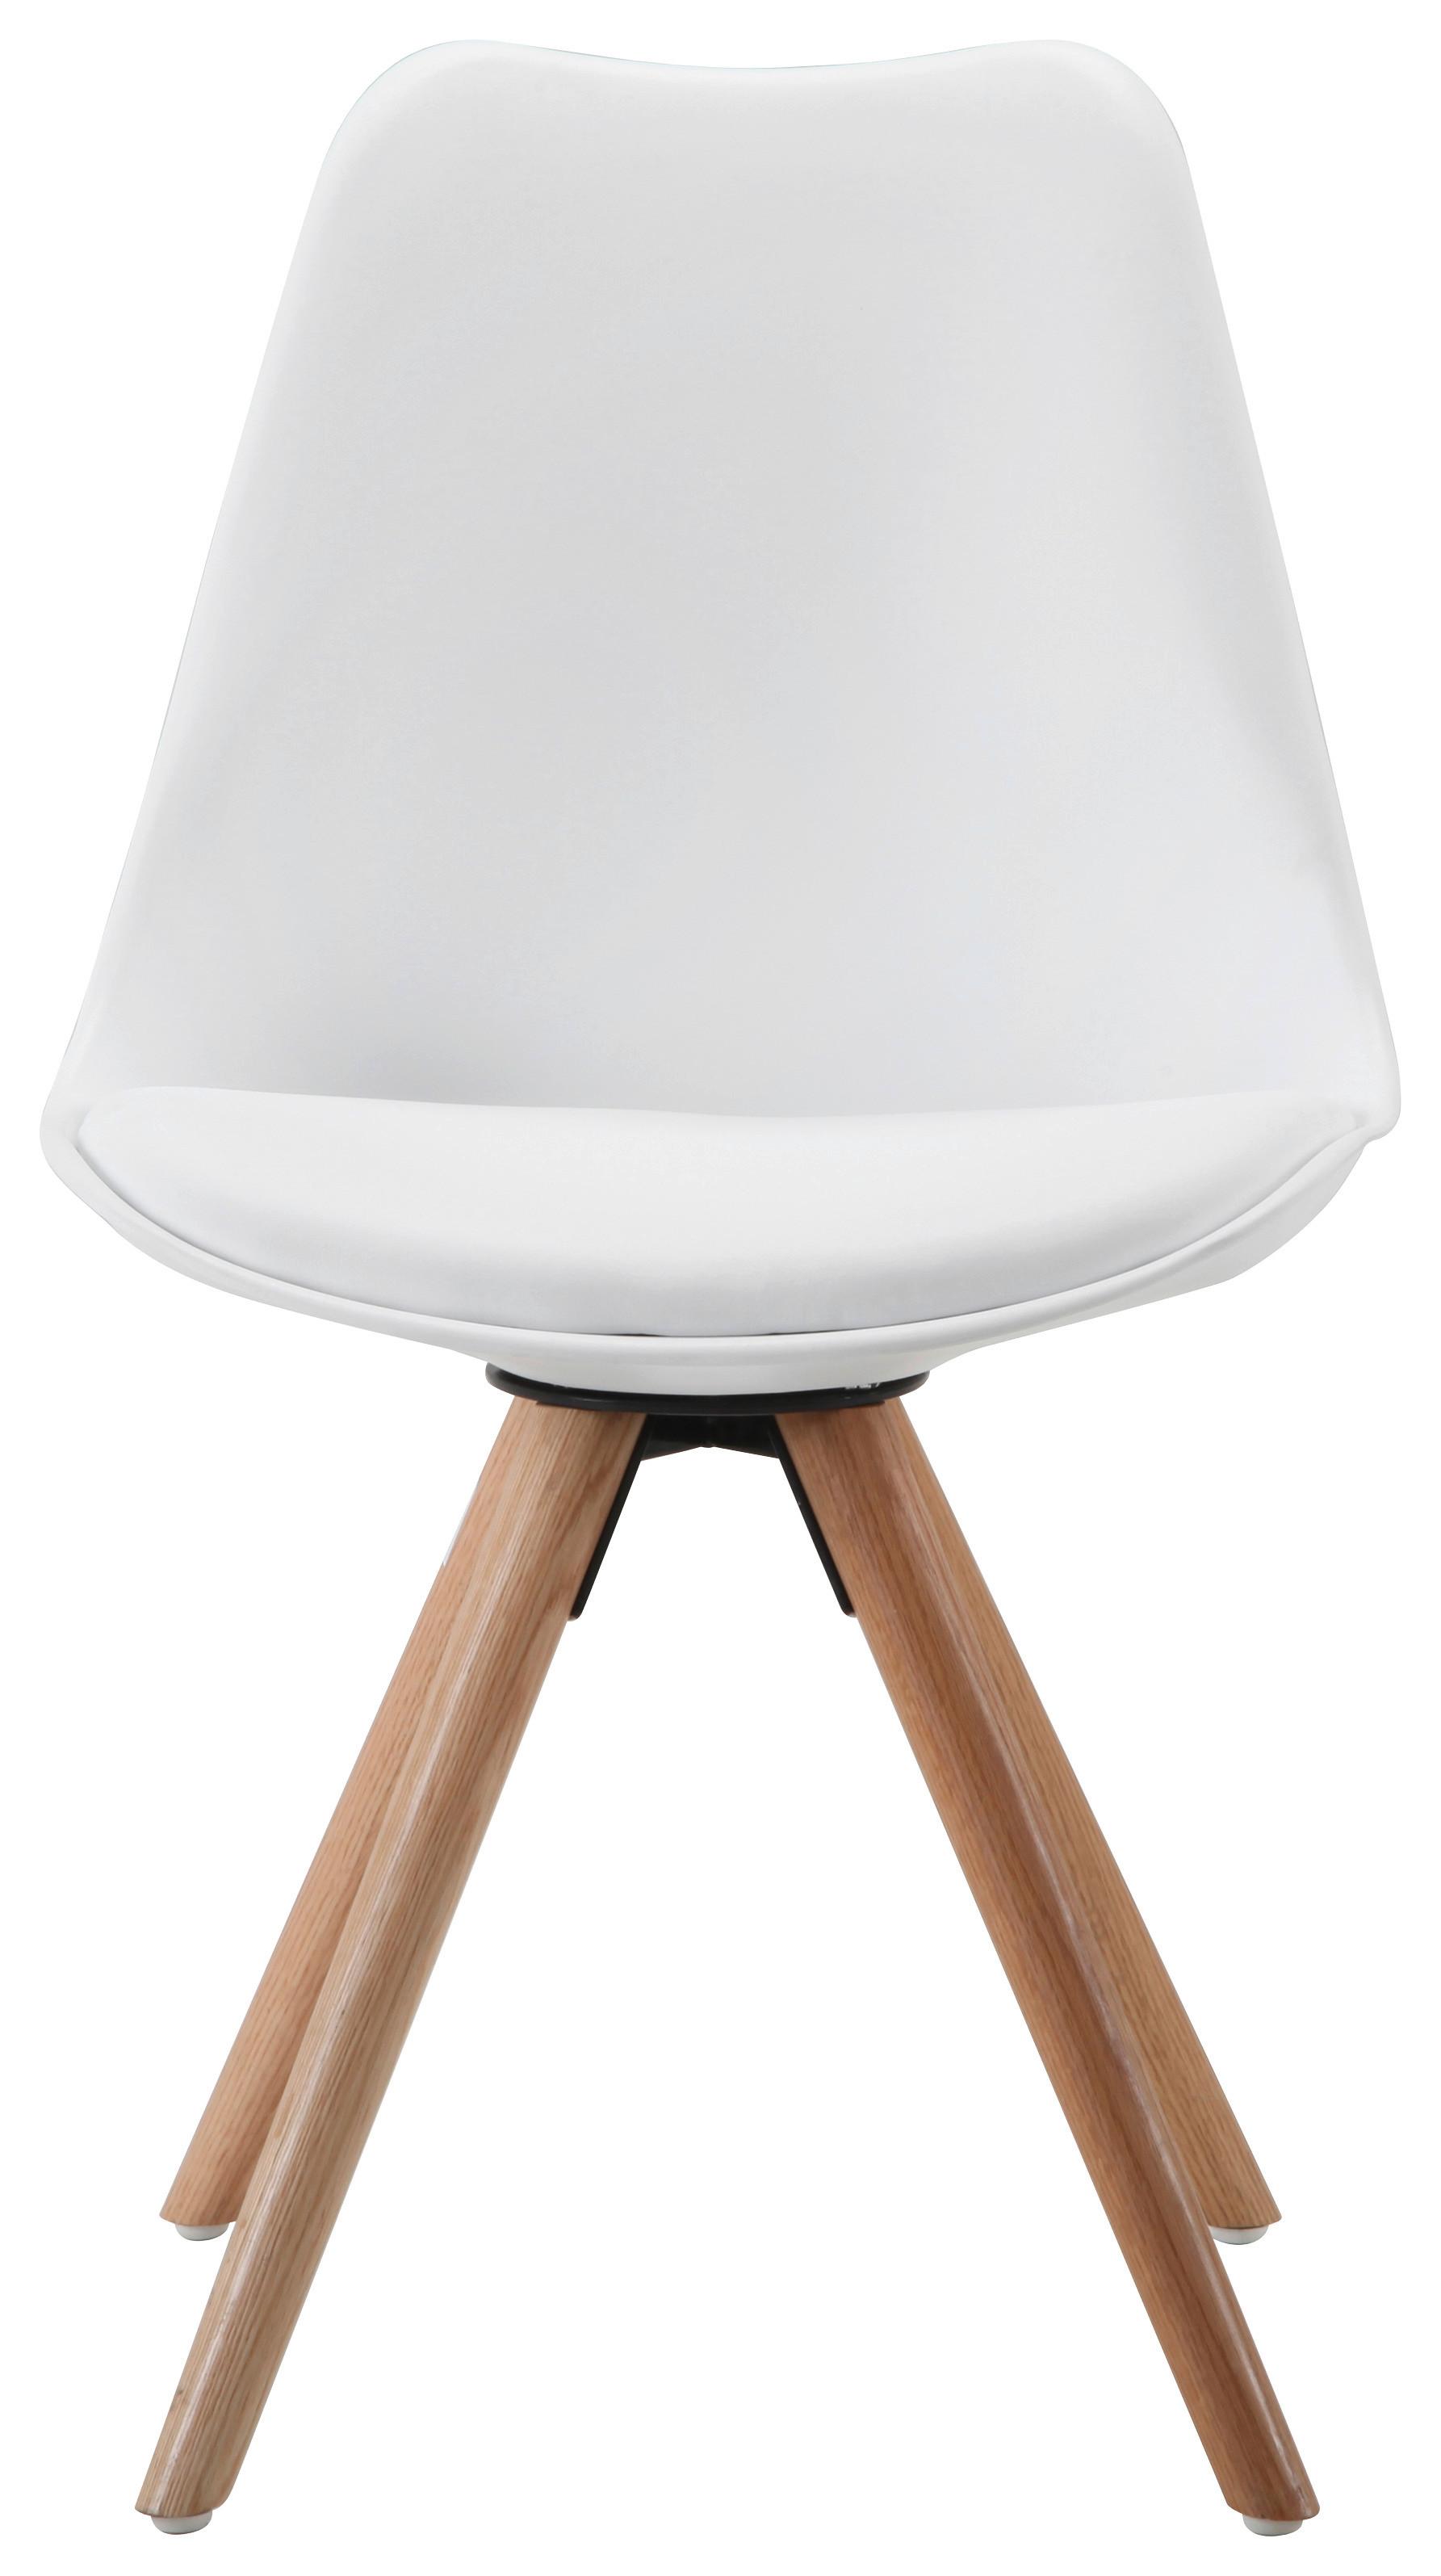 Stuhl in Weiß - Eichefarben/Weiß, MODERN, Holz/Kunststoff (48/81/57cm) - Based